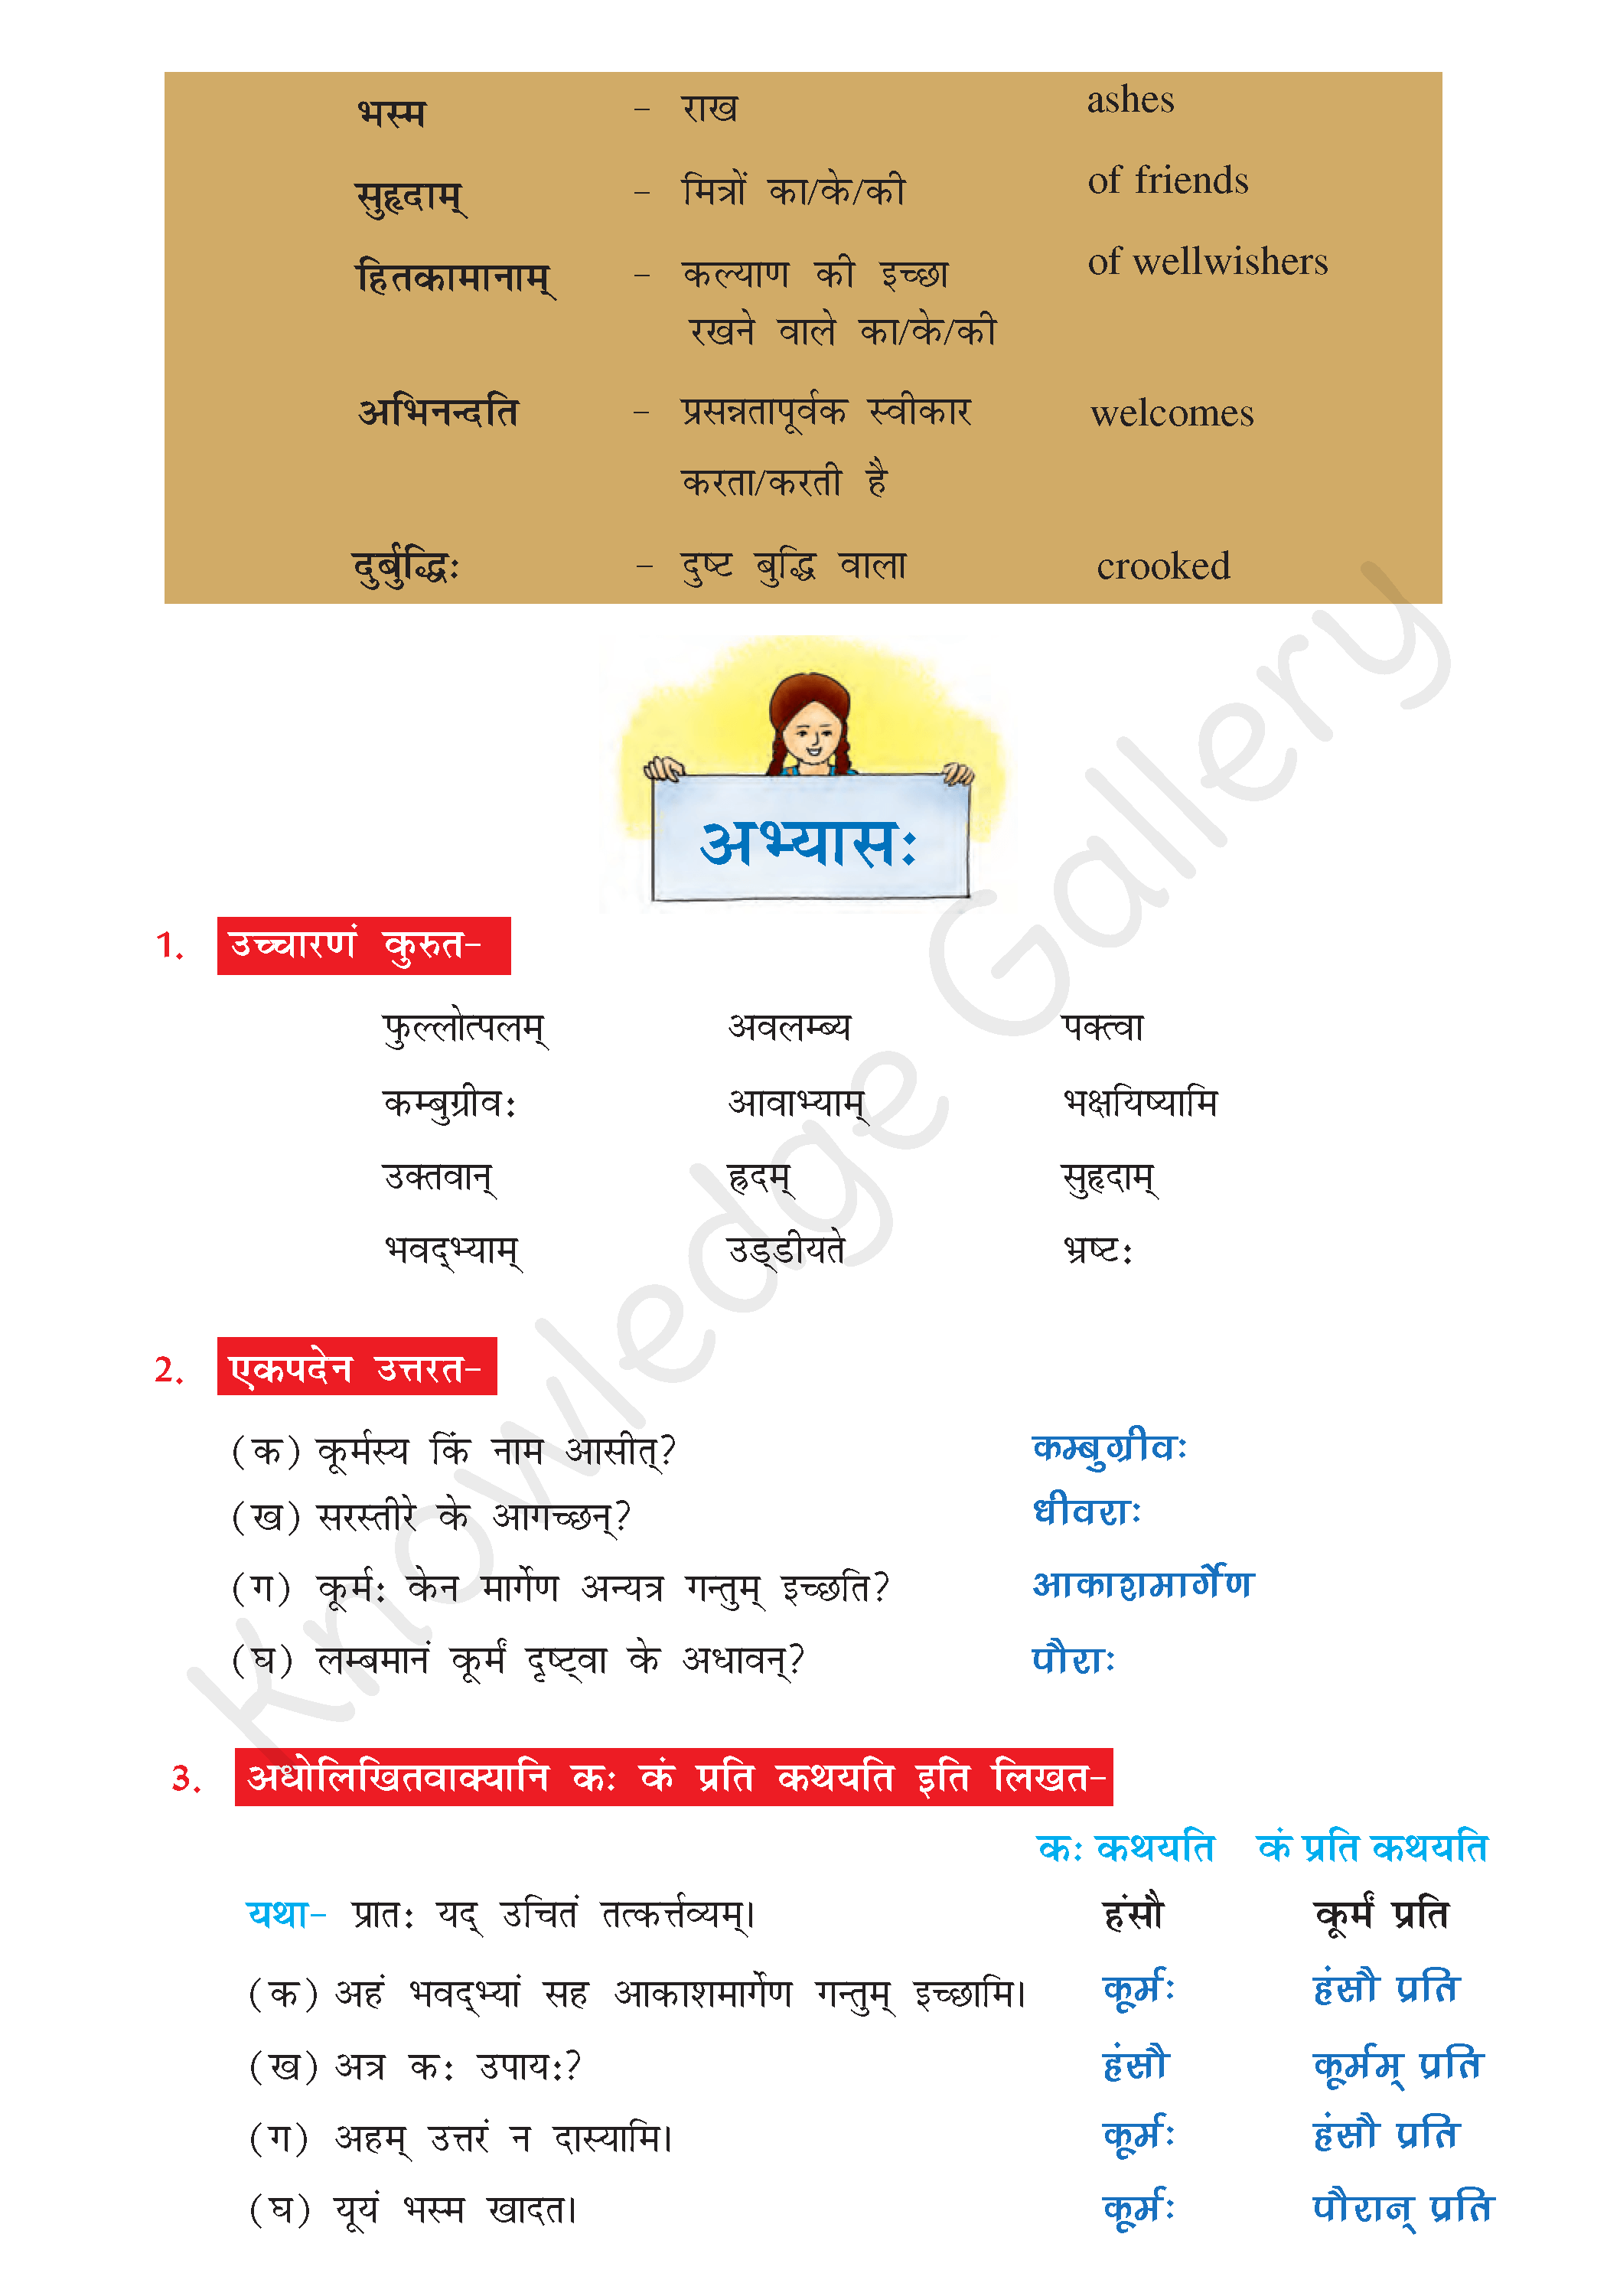 NCERT Solution For Class 7 Sanskrit Chapter 2 part 4